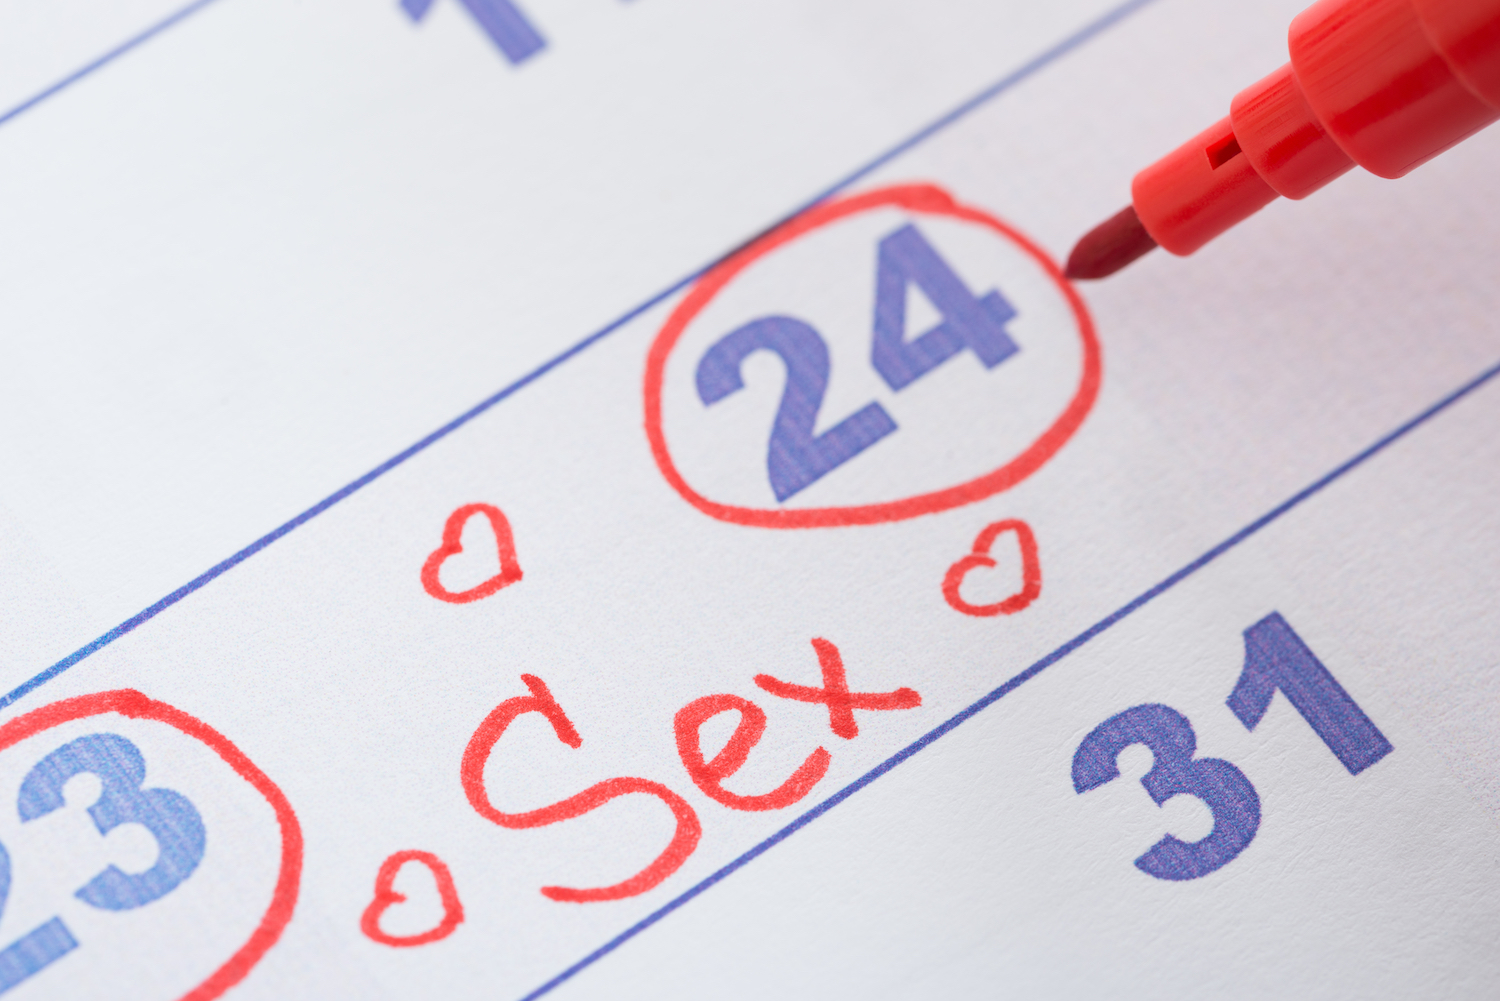 Kalender mit der Aufschrift Sex als Symbol für Sex nach Plan